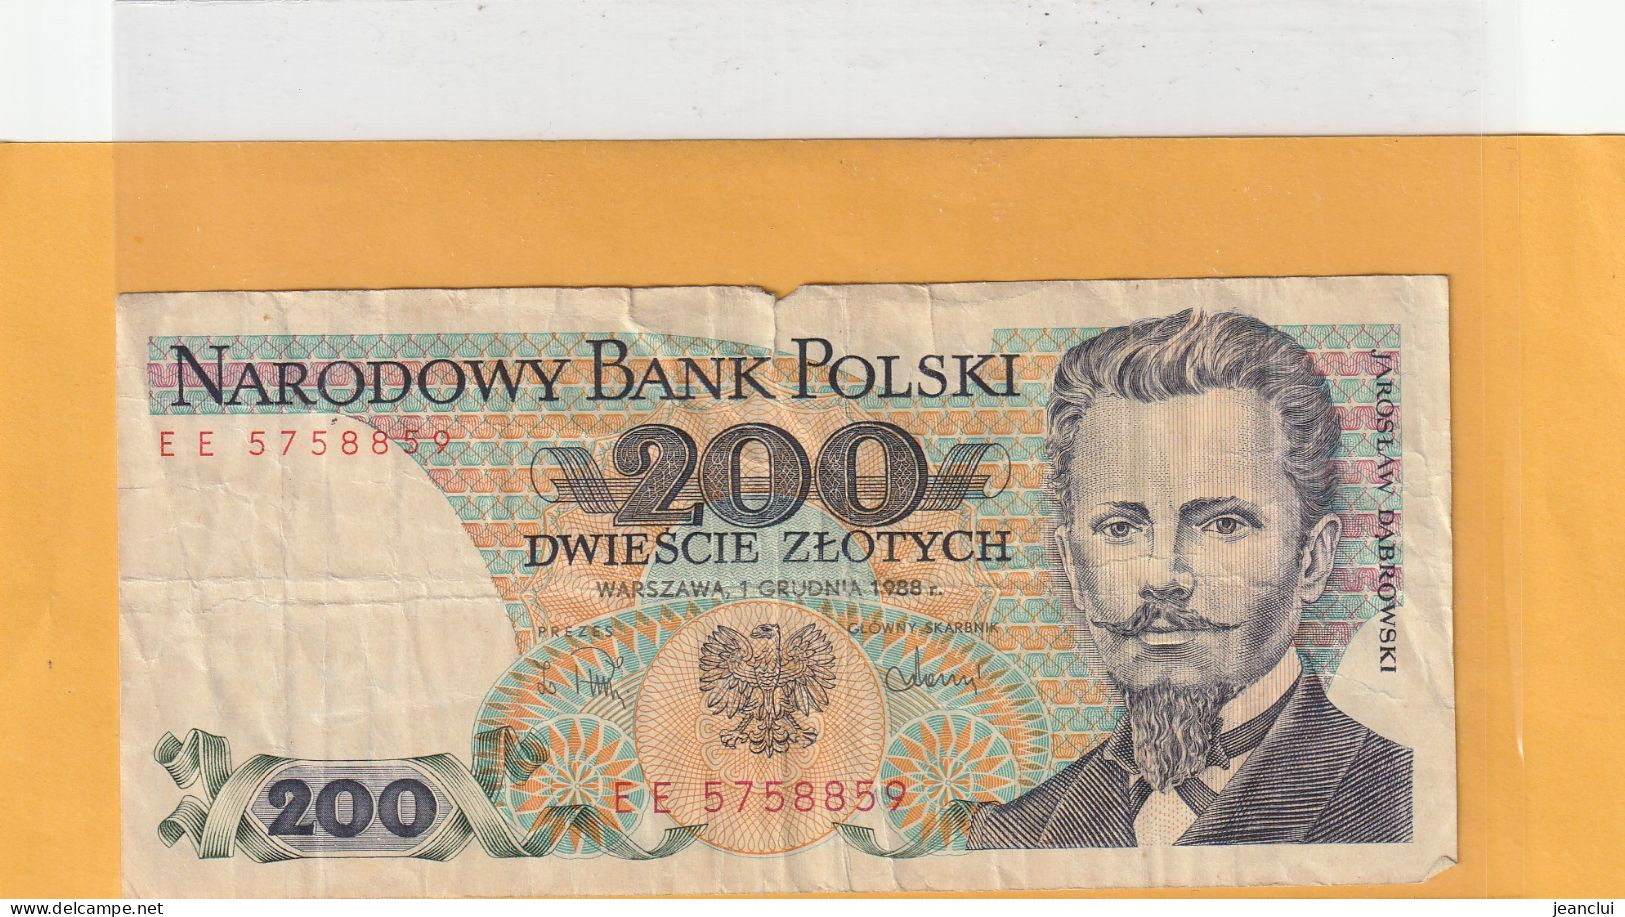 NARODOWY BANK POLSKI . 200 ZLOTYCH .  J. DABROWSKI  . 1-12-1988 .  N° EE 5758859 . 2 SCANNES  .  BILLET USITE - Poland